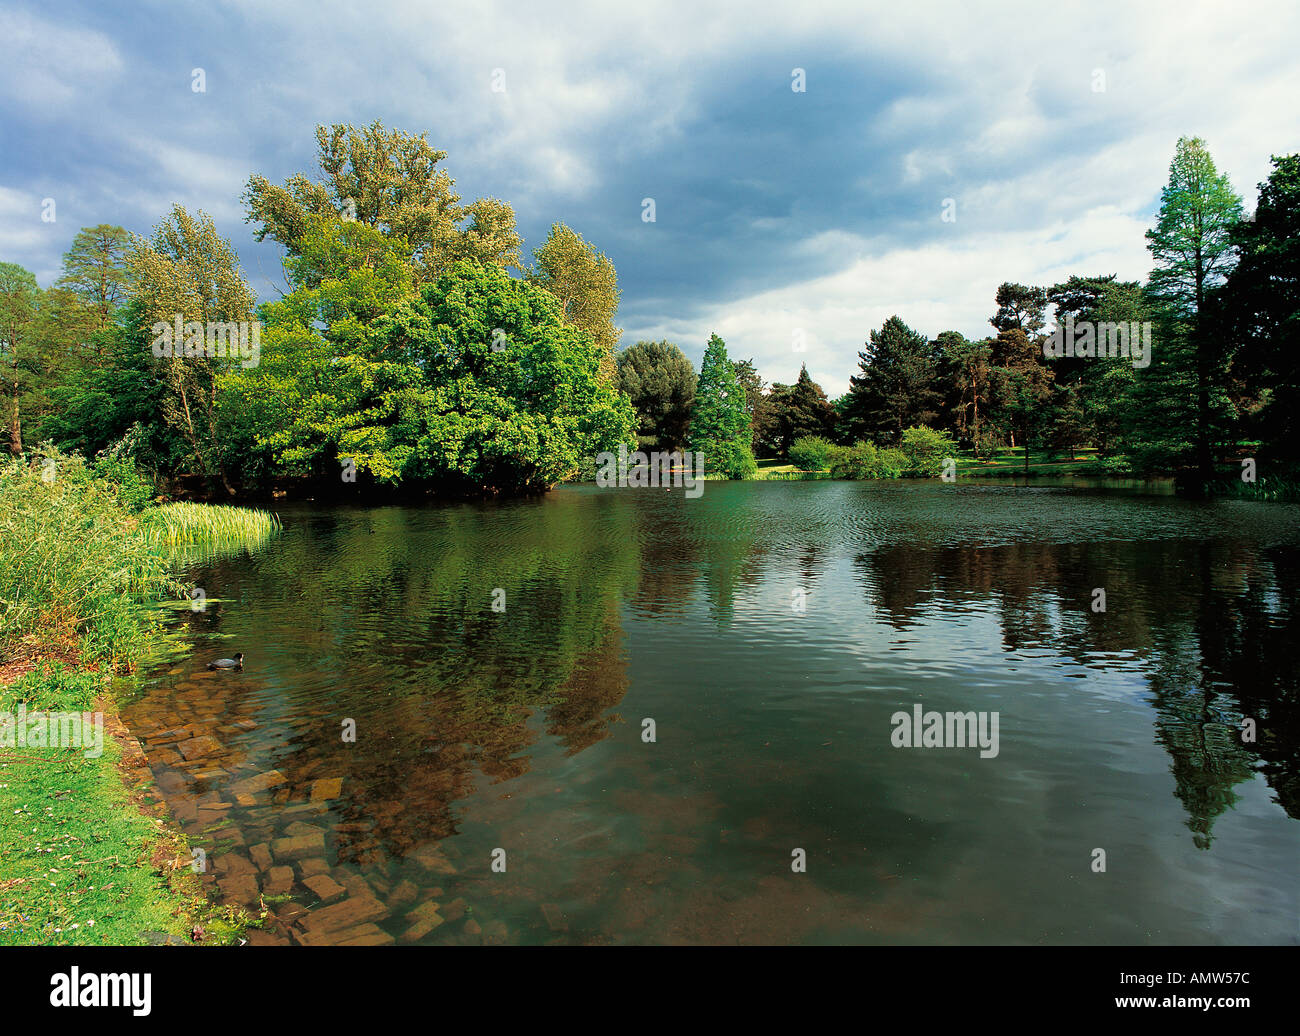 El lago de Kew Gardens London Gran Bretaña Foto de stock